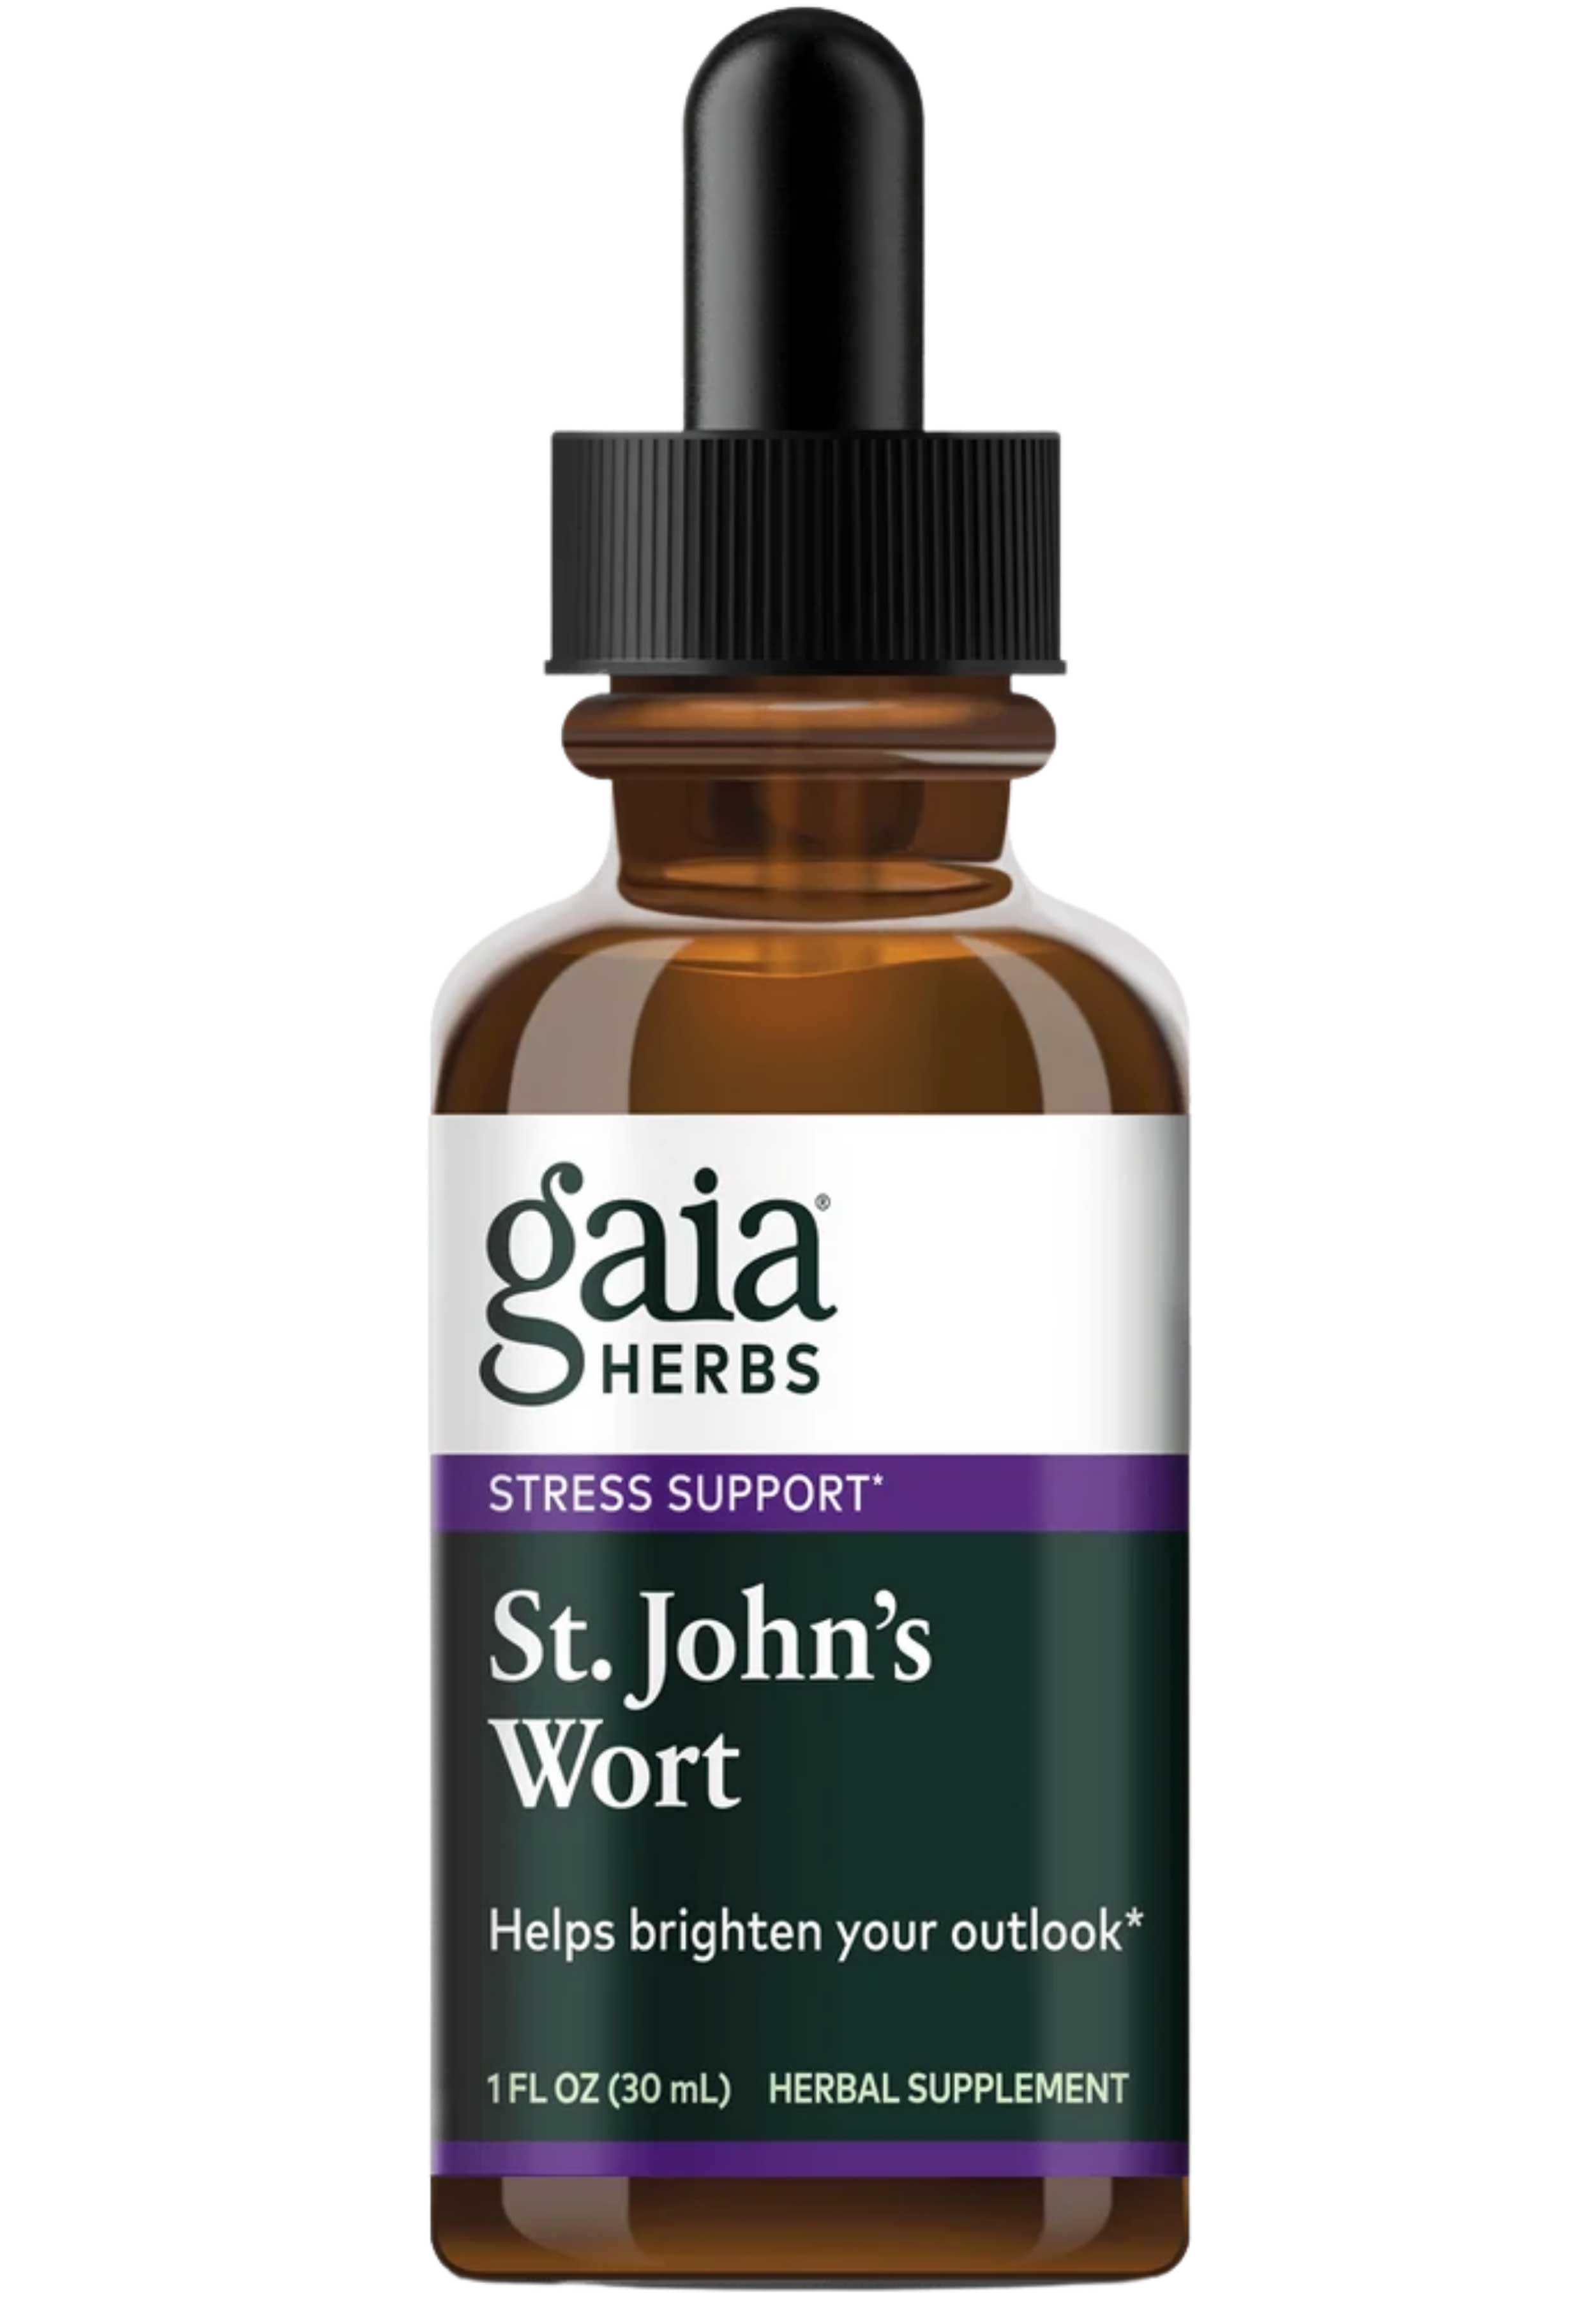 Gaia Herbs St. John's Wort